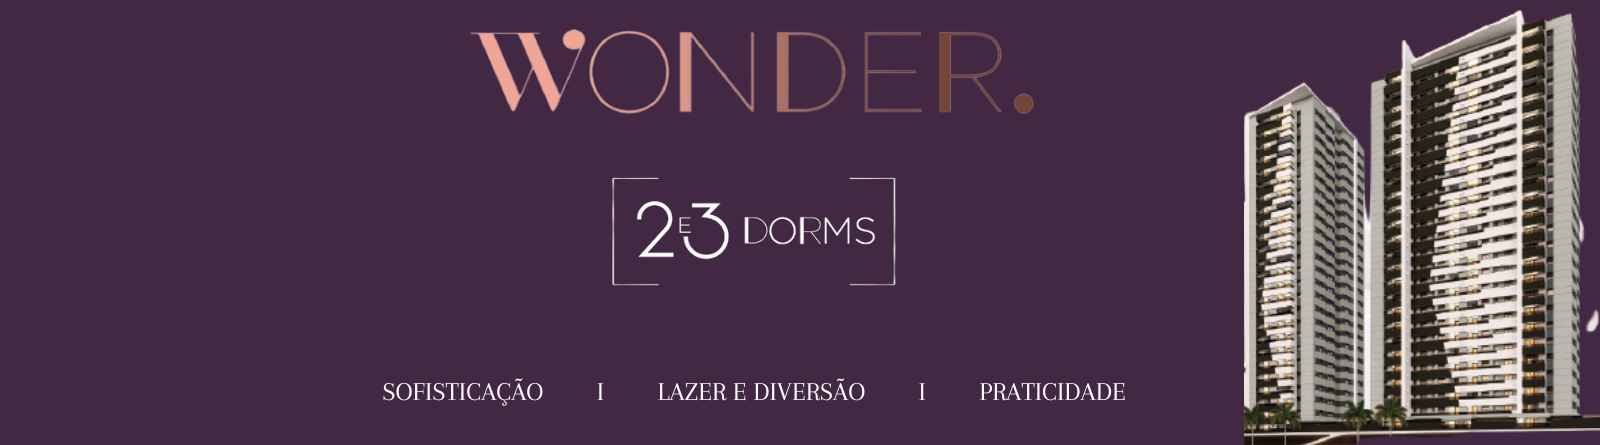 Wonder - Wonder 